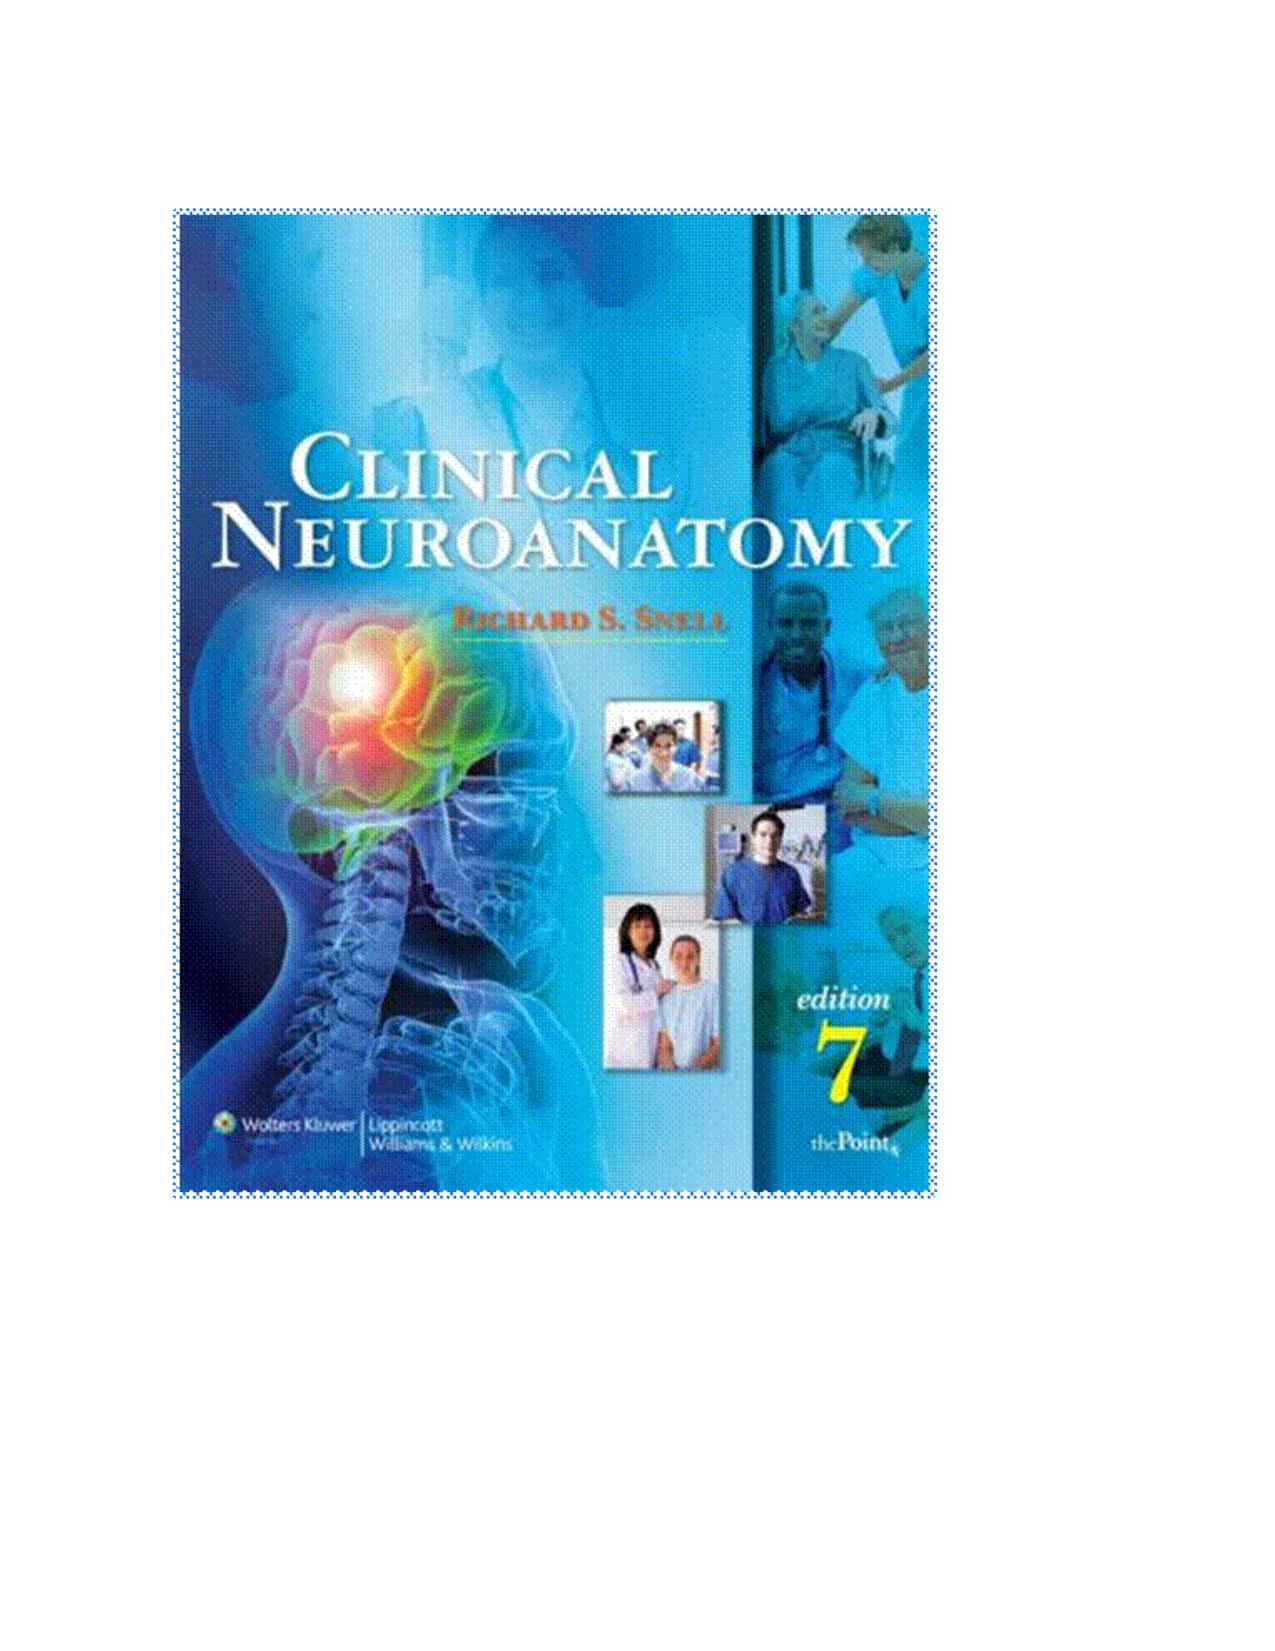 Clinical Neuroanatomy Snell 7th ed 2010pdf